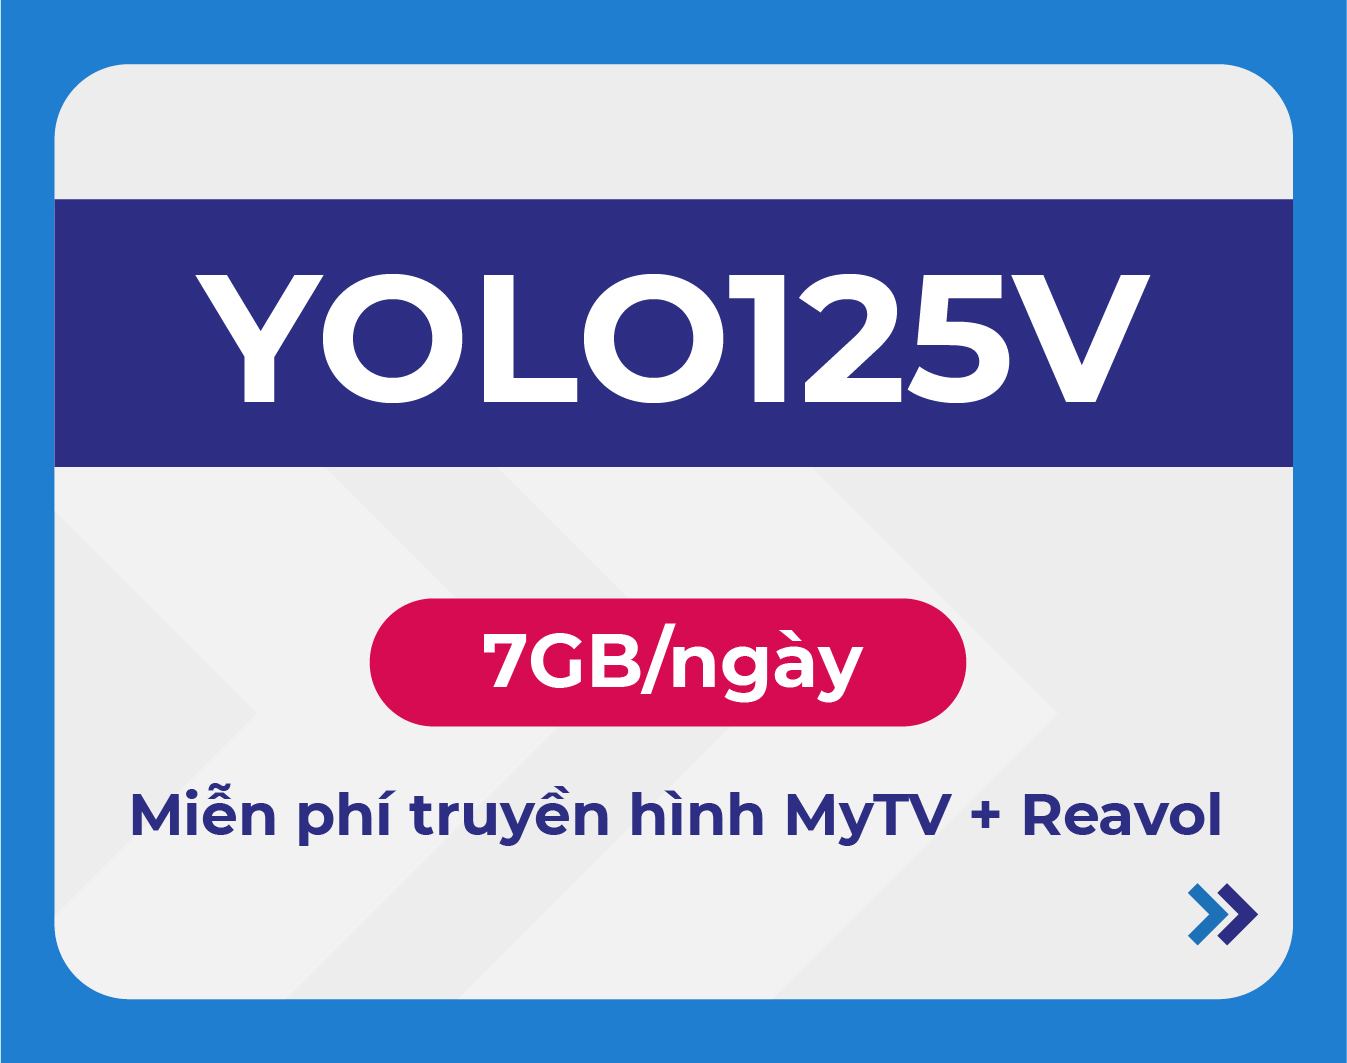 YOLO125V